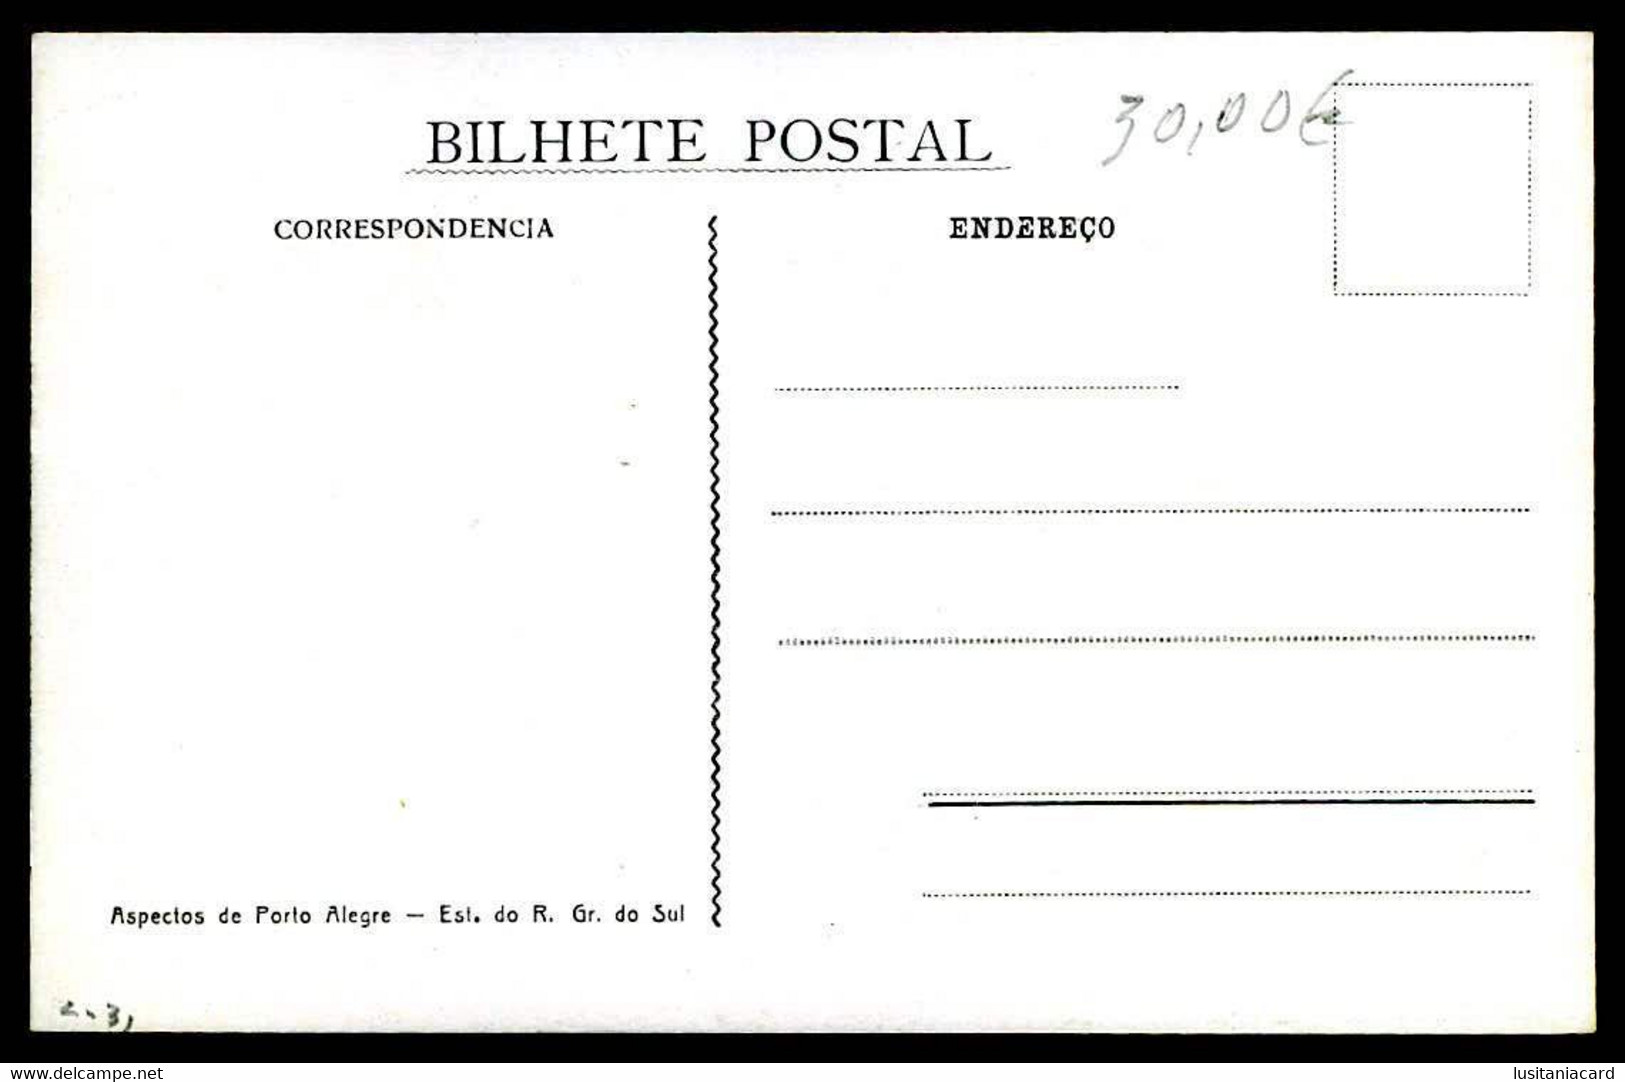 PORTO ALEGRE  - ELECTRICOS-  Estação De Bonds E Praça Senador Florencio.( Nº 2)  Carte Postale - Porto Alegre